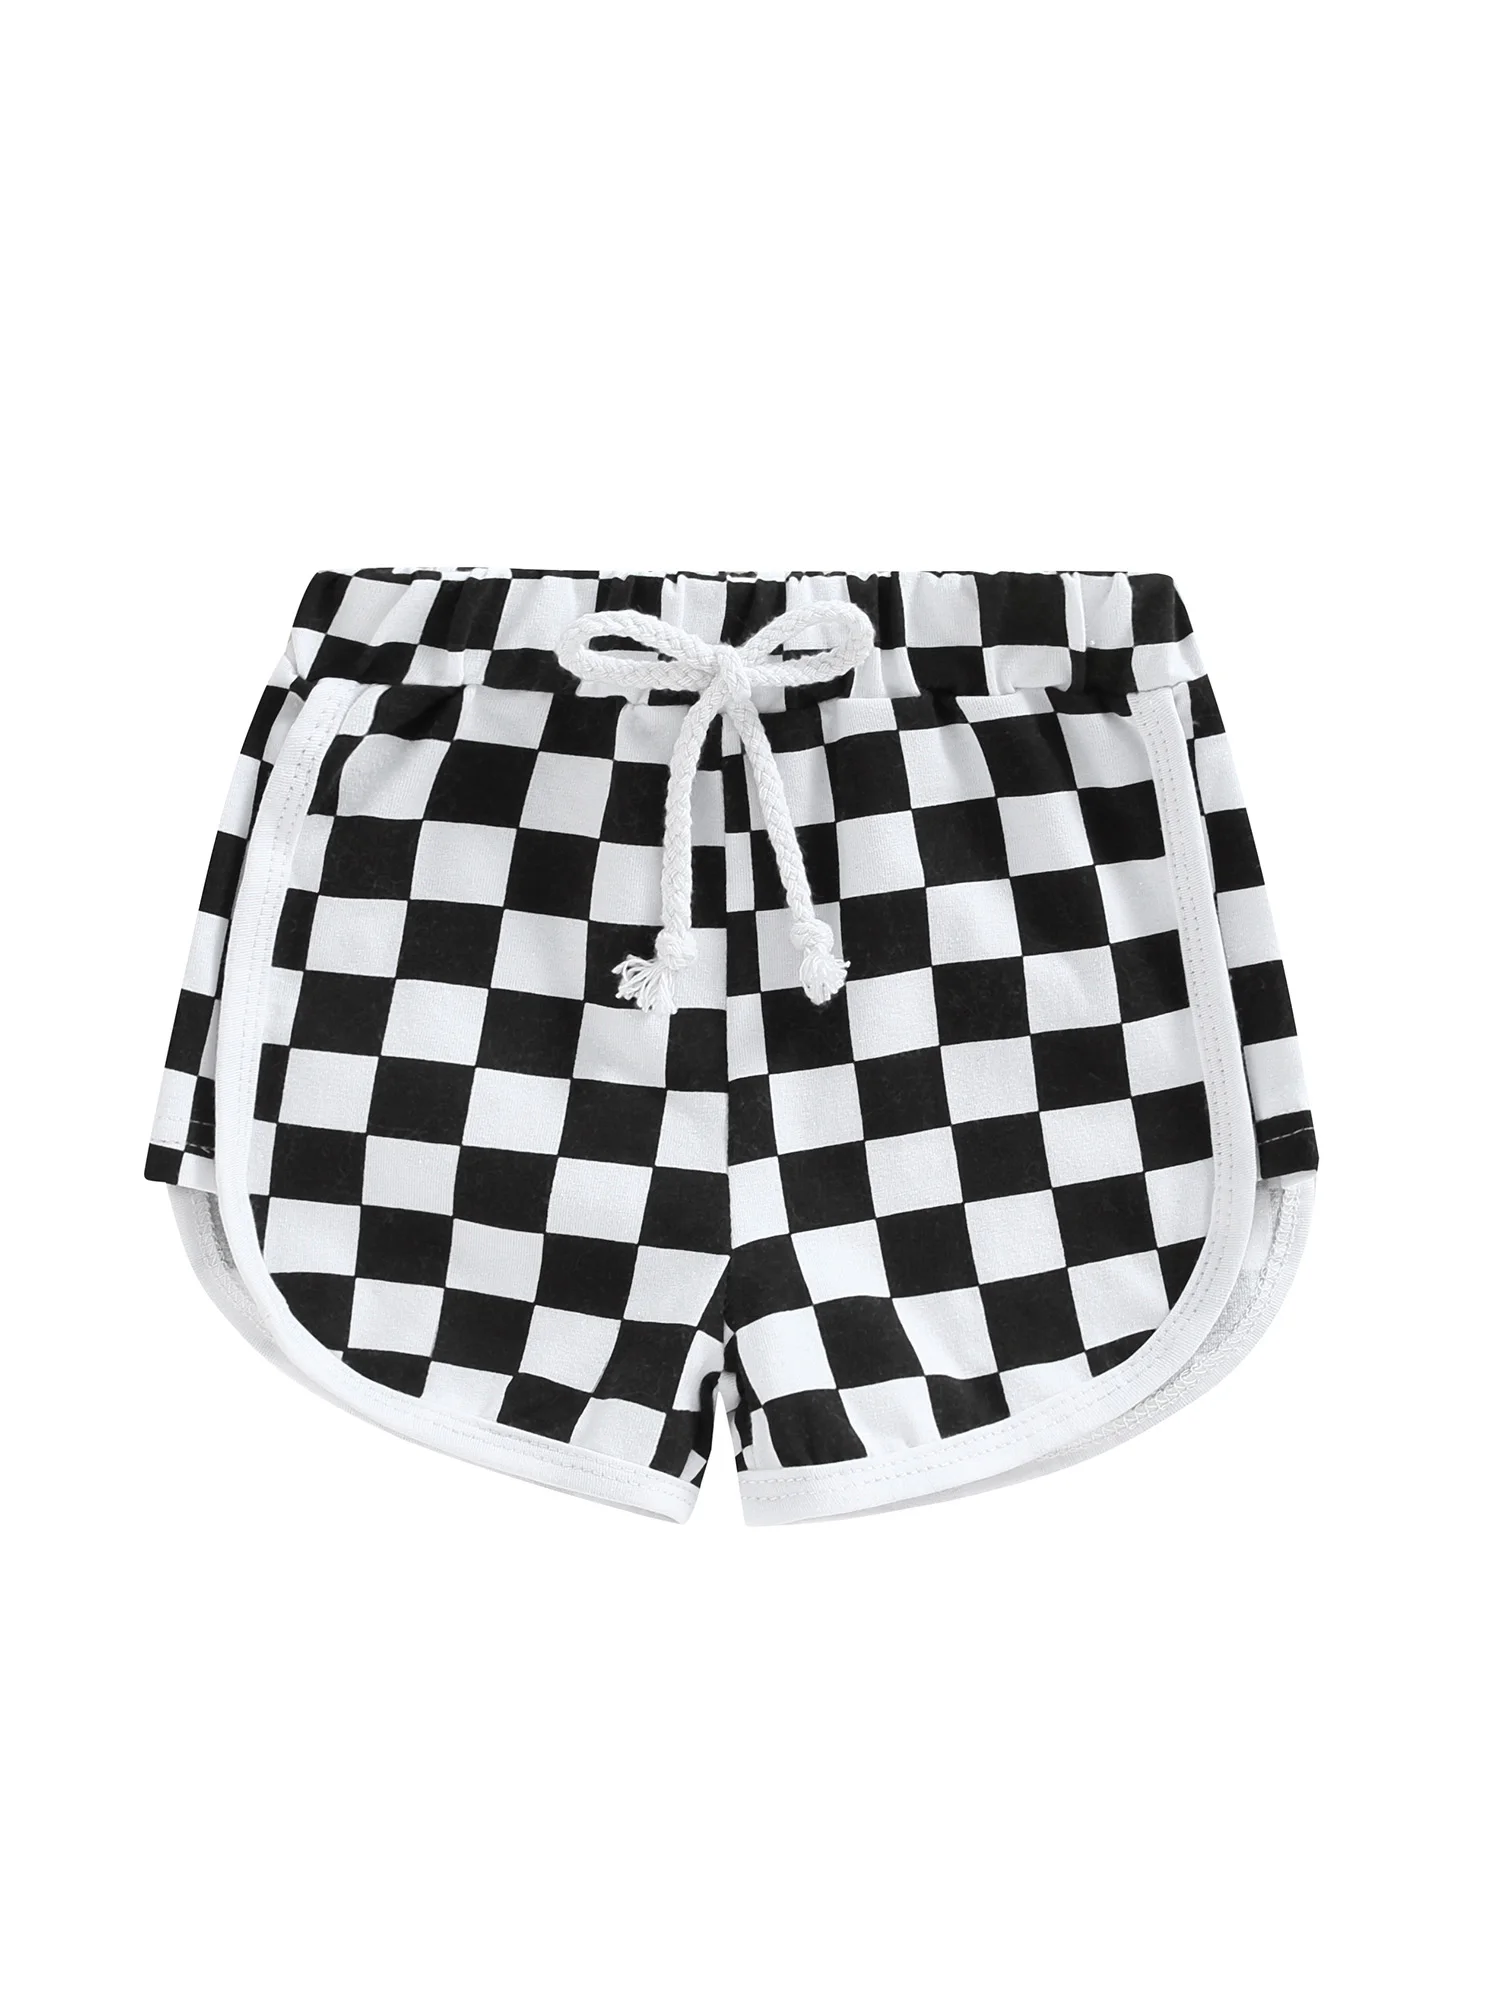 Baby Boy Shorts Summer Casual Cotton Shorts Elastic Waistband Drawstring Shorts with Pockets